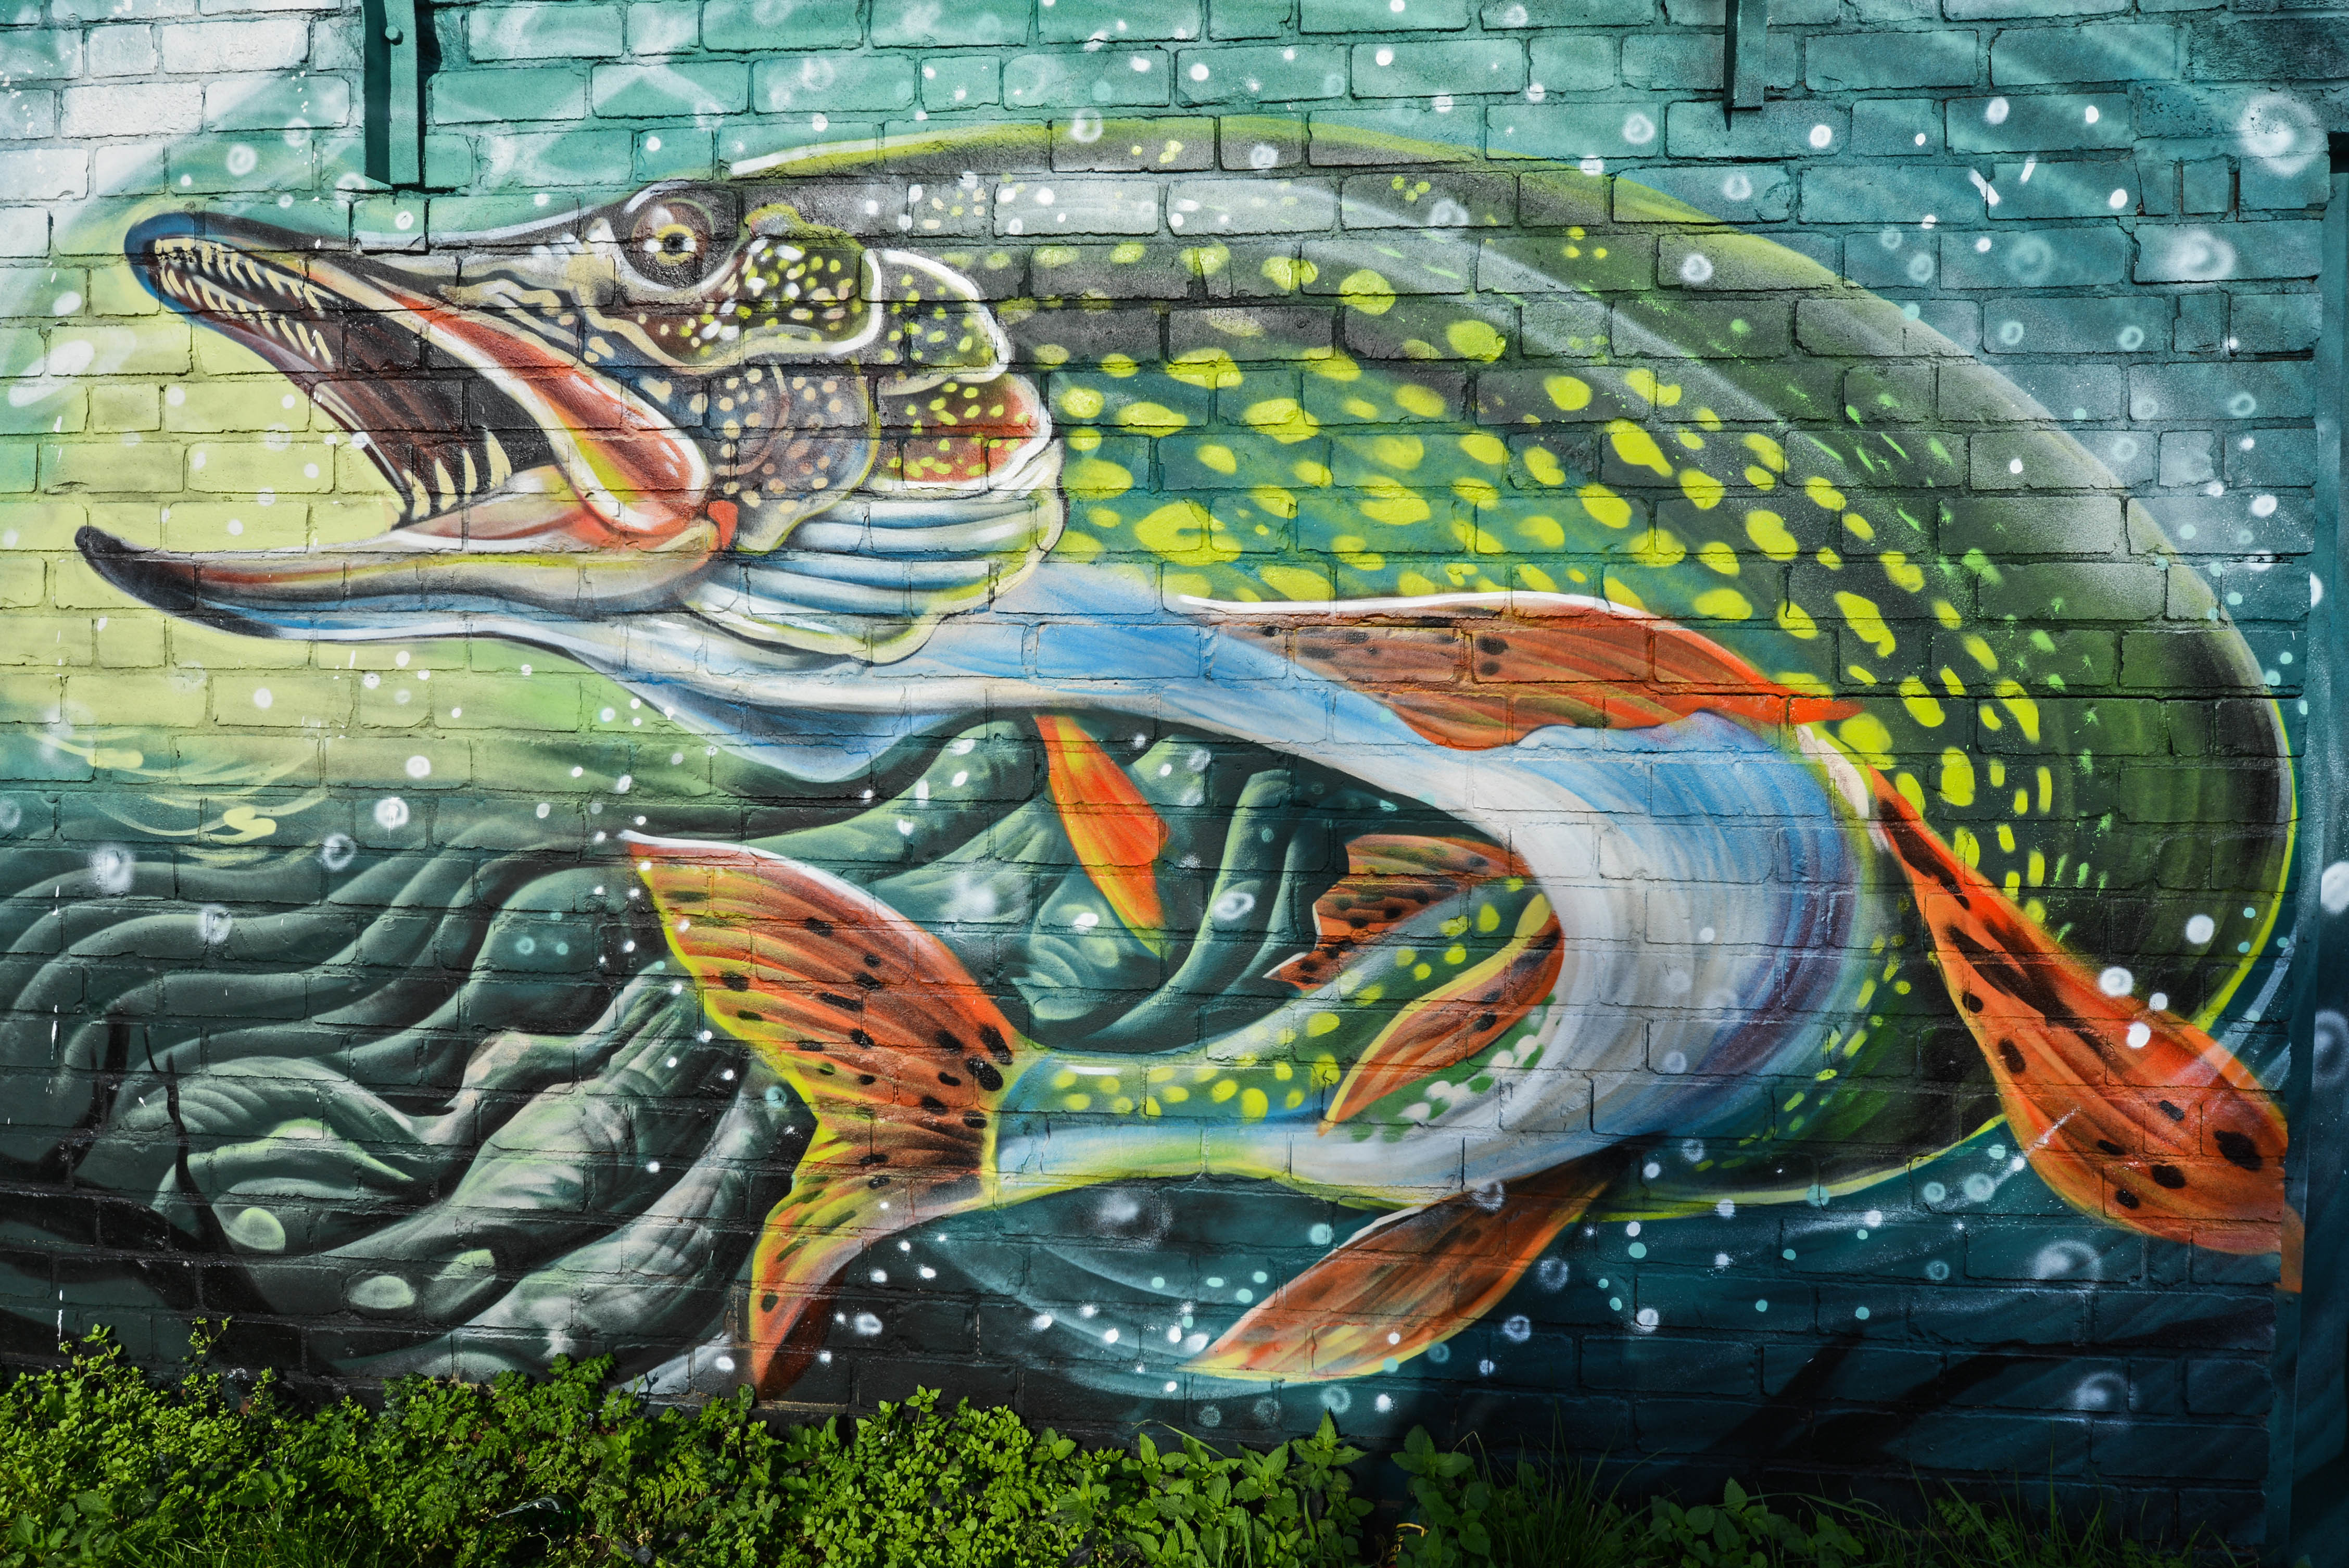 3d Image brick, graffiti, fish, artistic